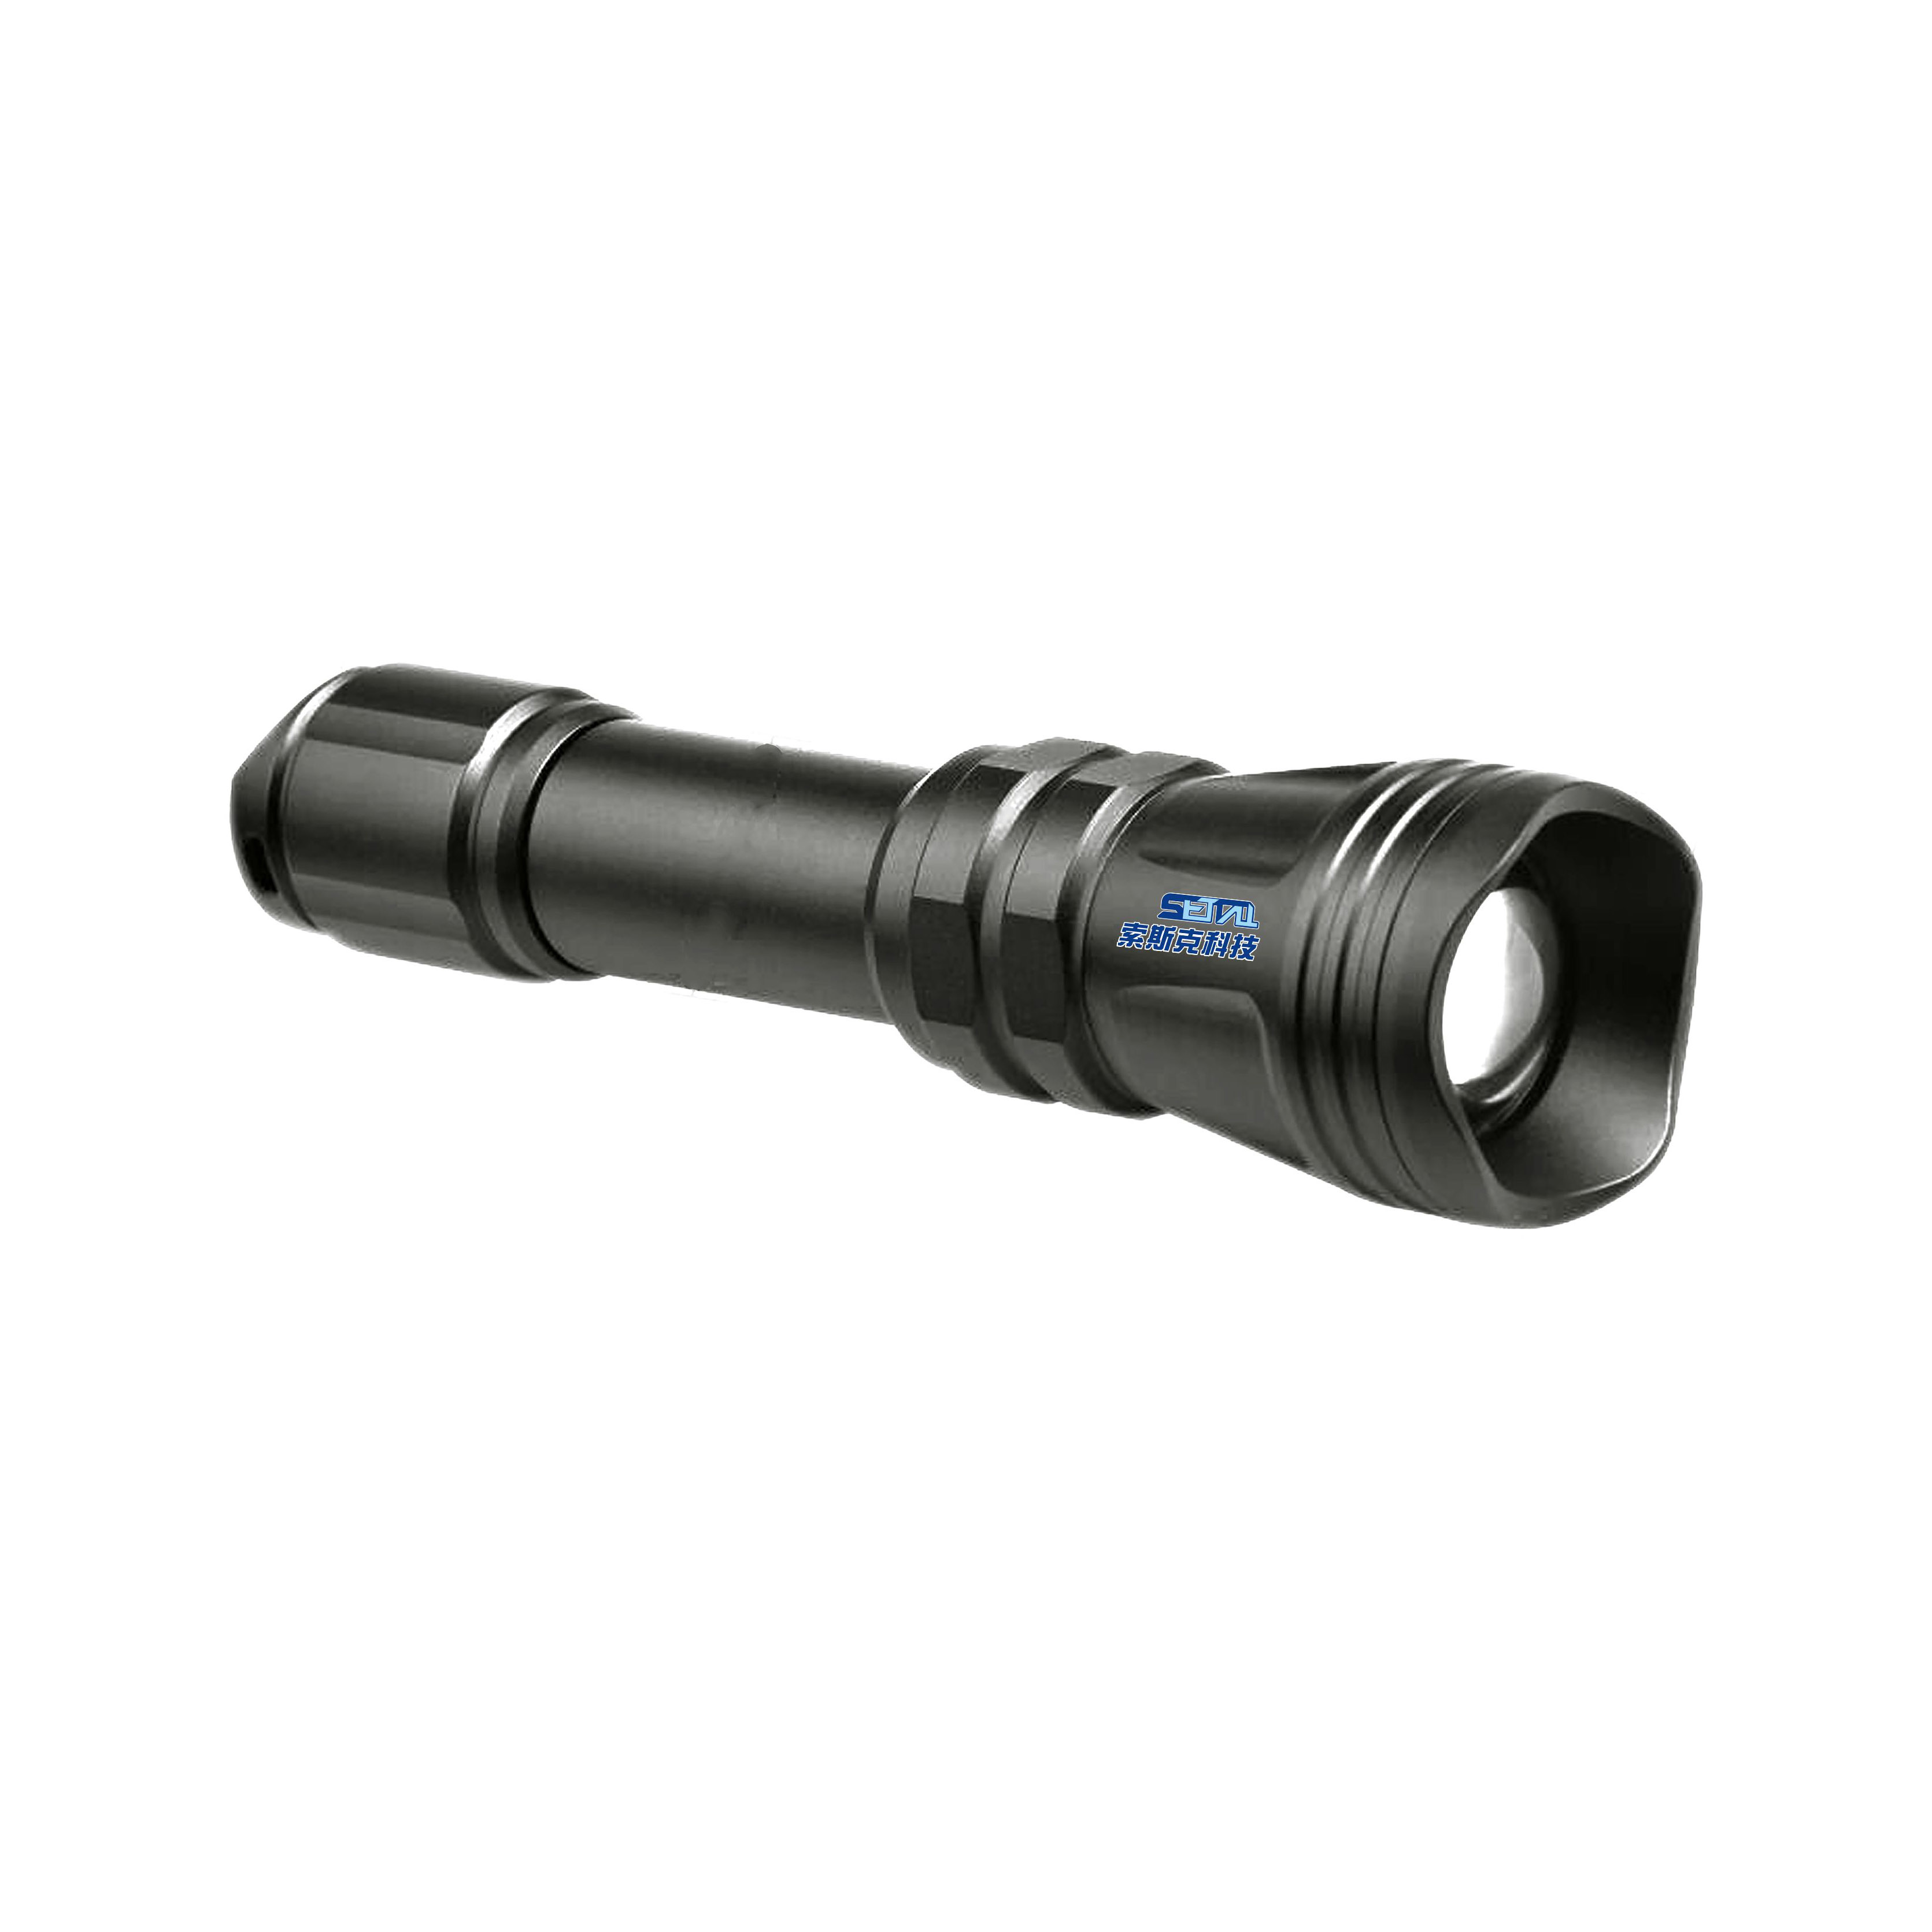 SETTALL Laser flashlight